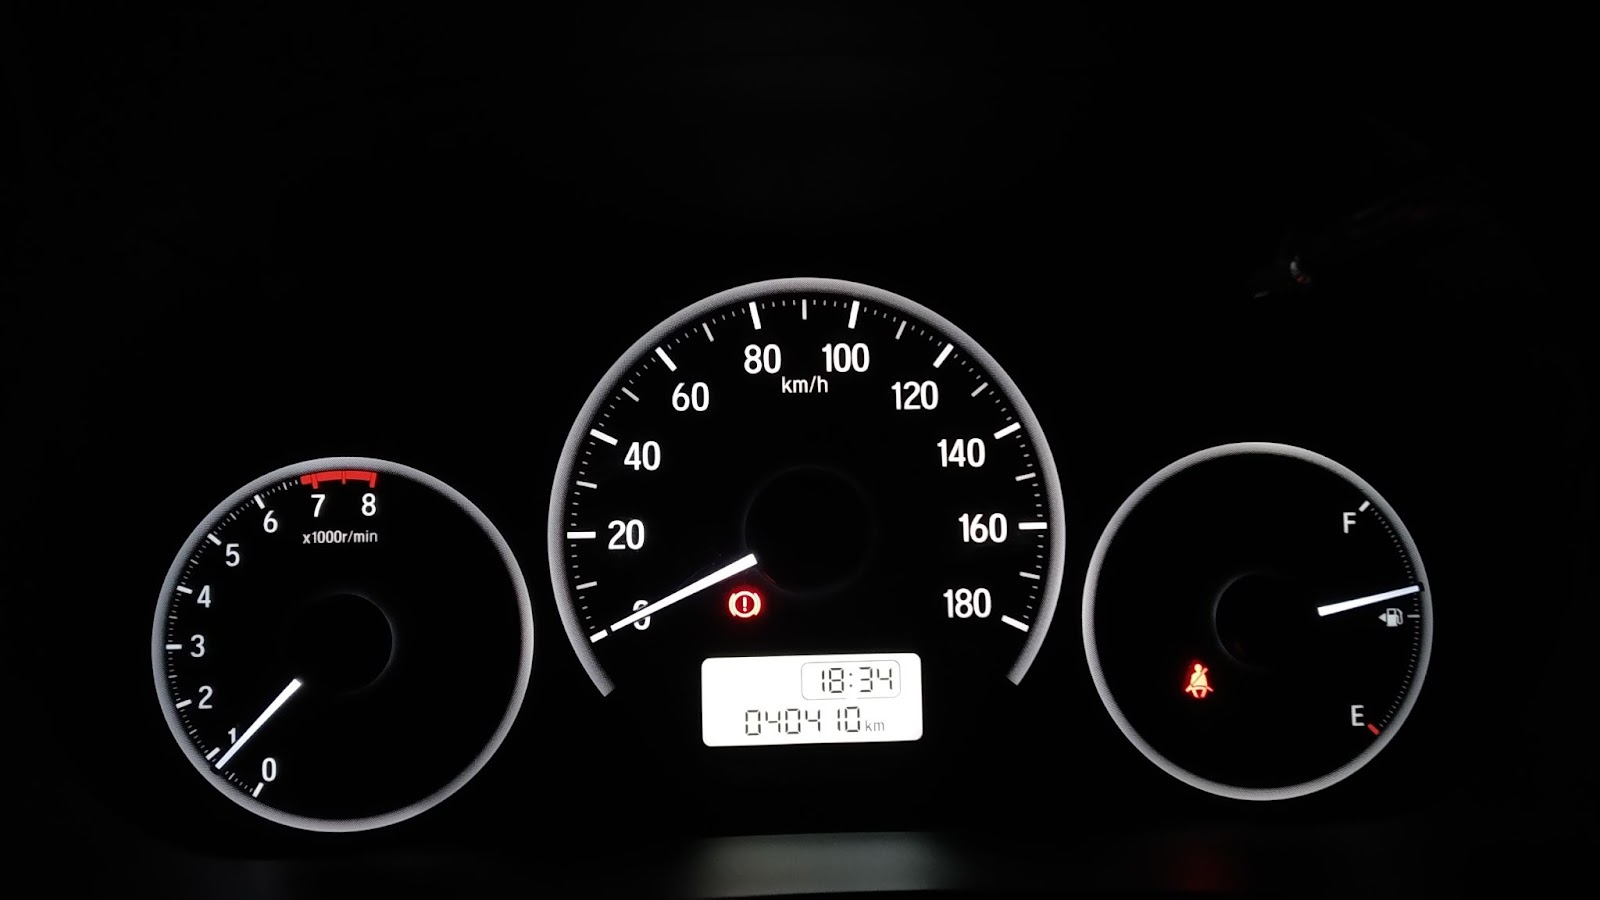 Merawat & Mengganti Lampu Speedometer Mobil Agya Bekas